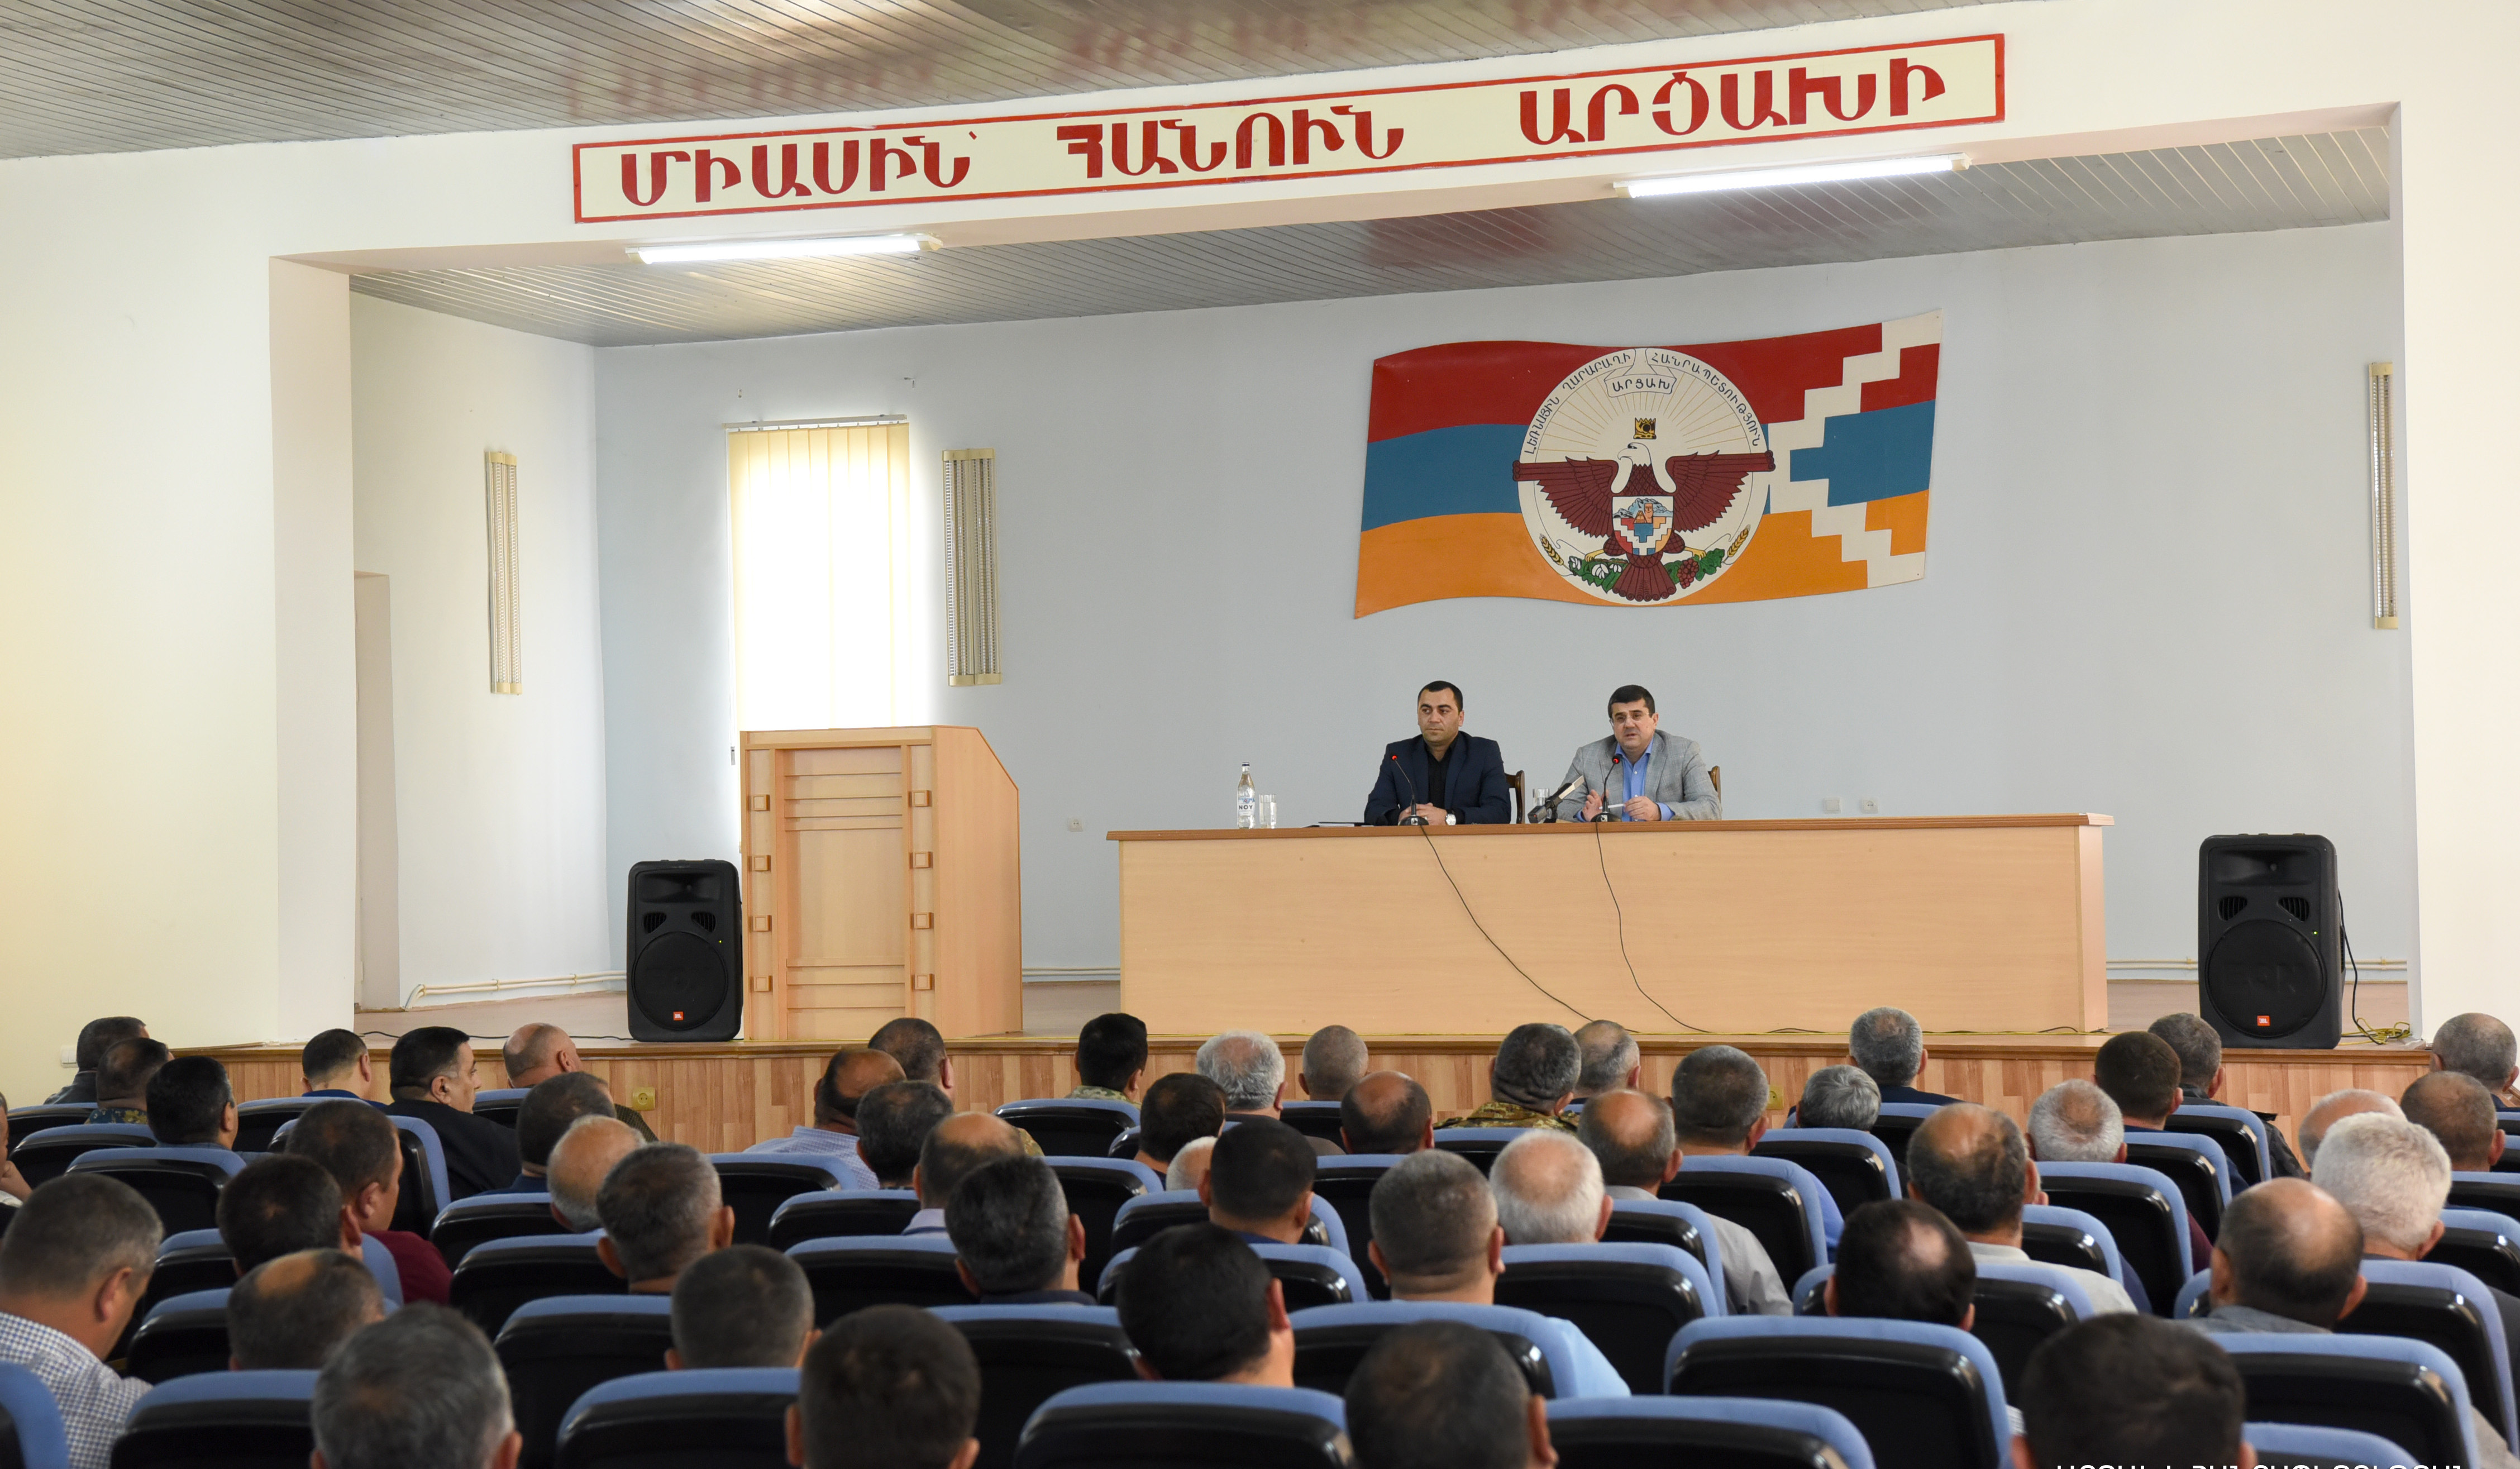 Փառուխի և Քարագլխի հատվածում ադրբեջանական կողմի հետքաշման համար խաղաղապահ զորակազմի հետ բանակցությունները շարունակվում են. Արցախի նախագահ